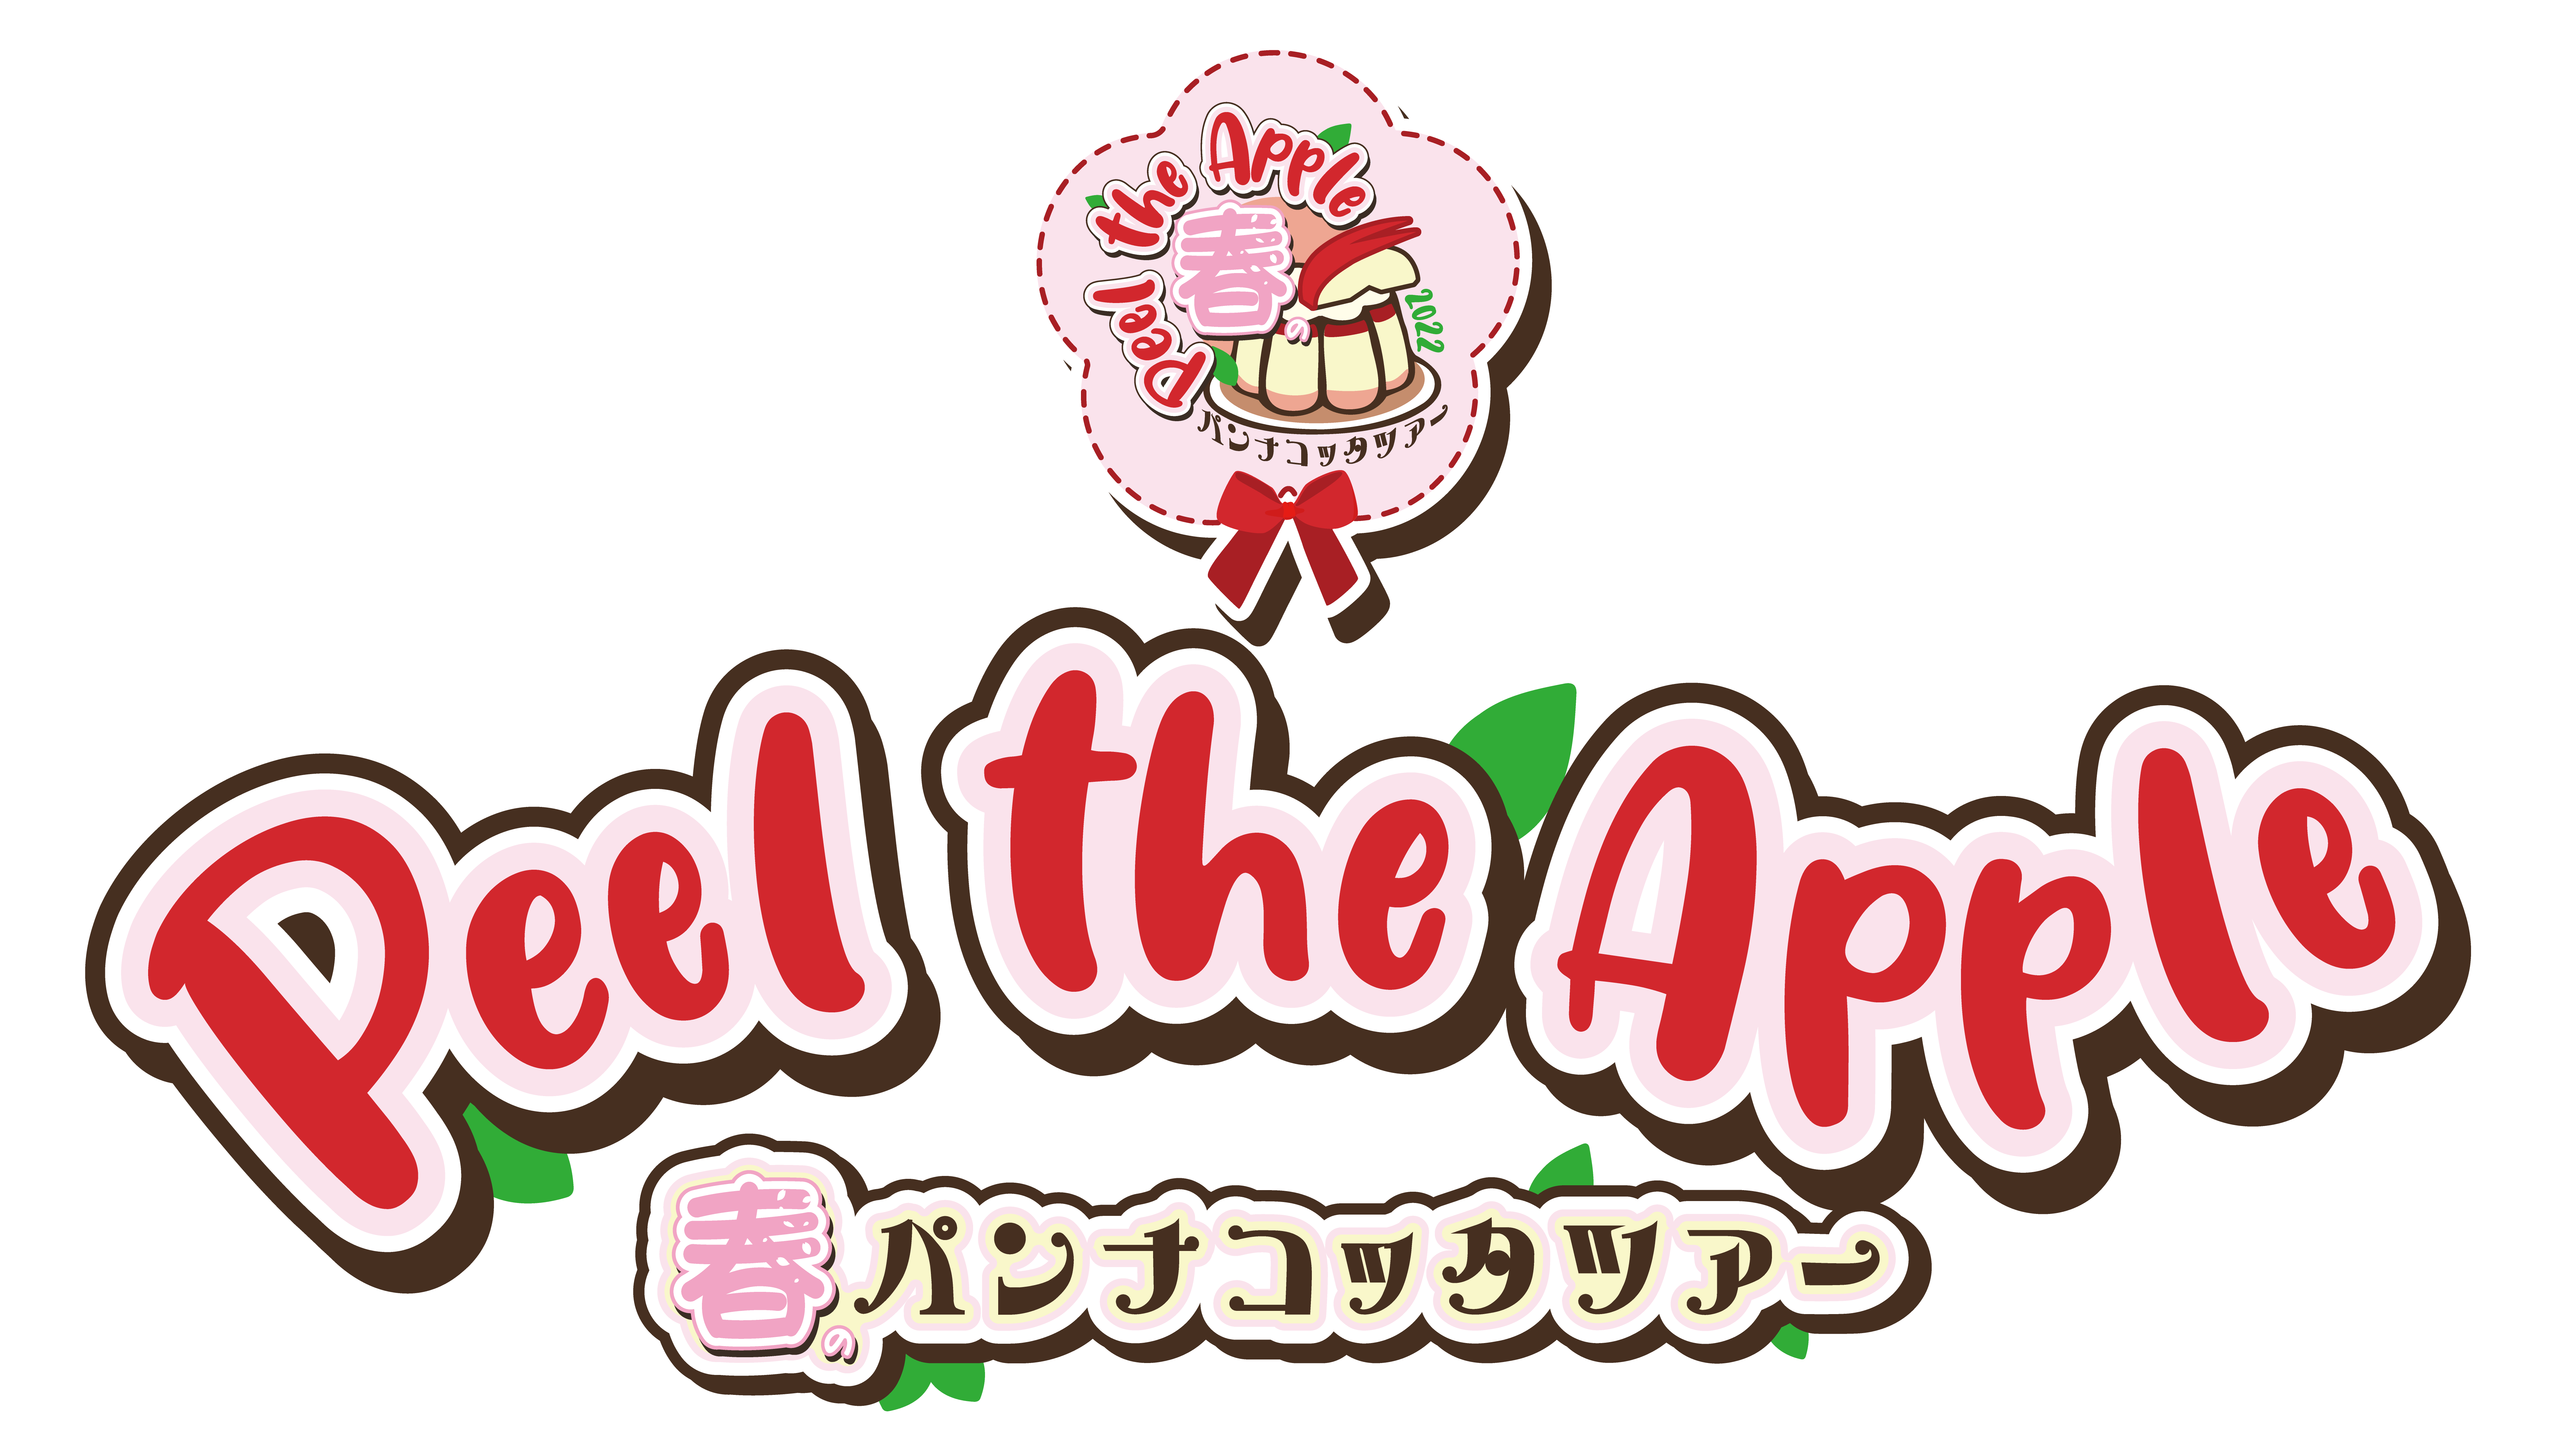 4月15日開催 「Peel the Apple春のパンナコッタツアー東京公演」 特典券事前抽選販売受付